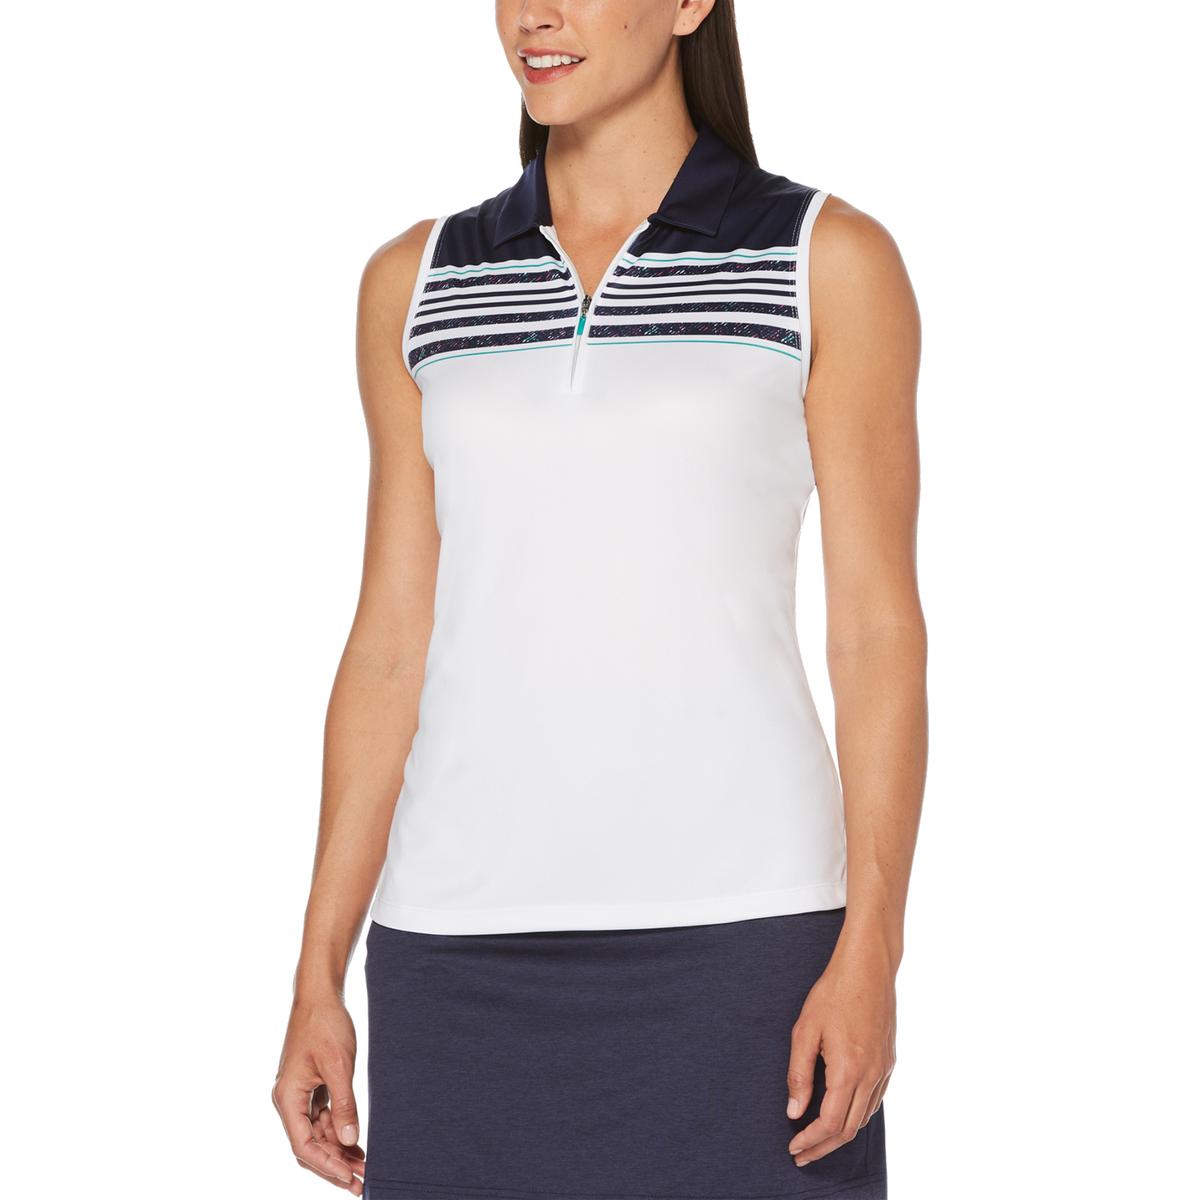 PGA Tour Womens White Athletic Sleeveless Golf Polo Top M BHFO 6159 | eBay